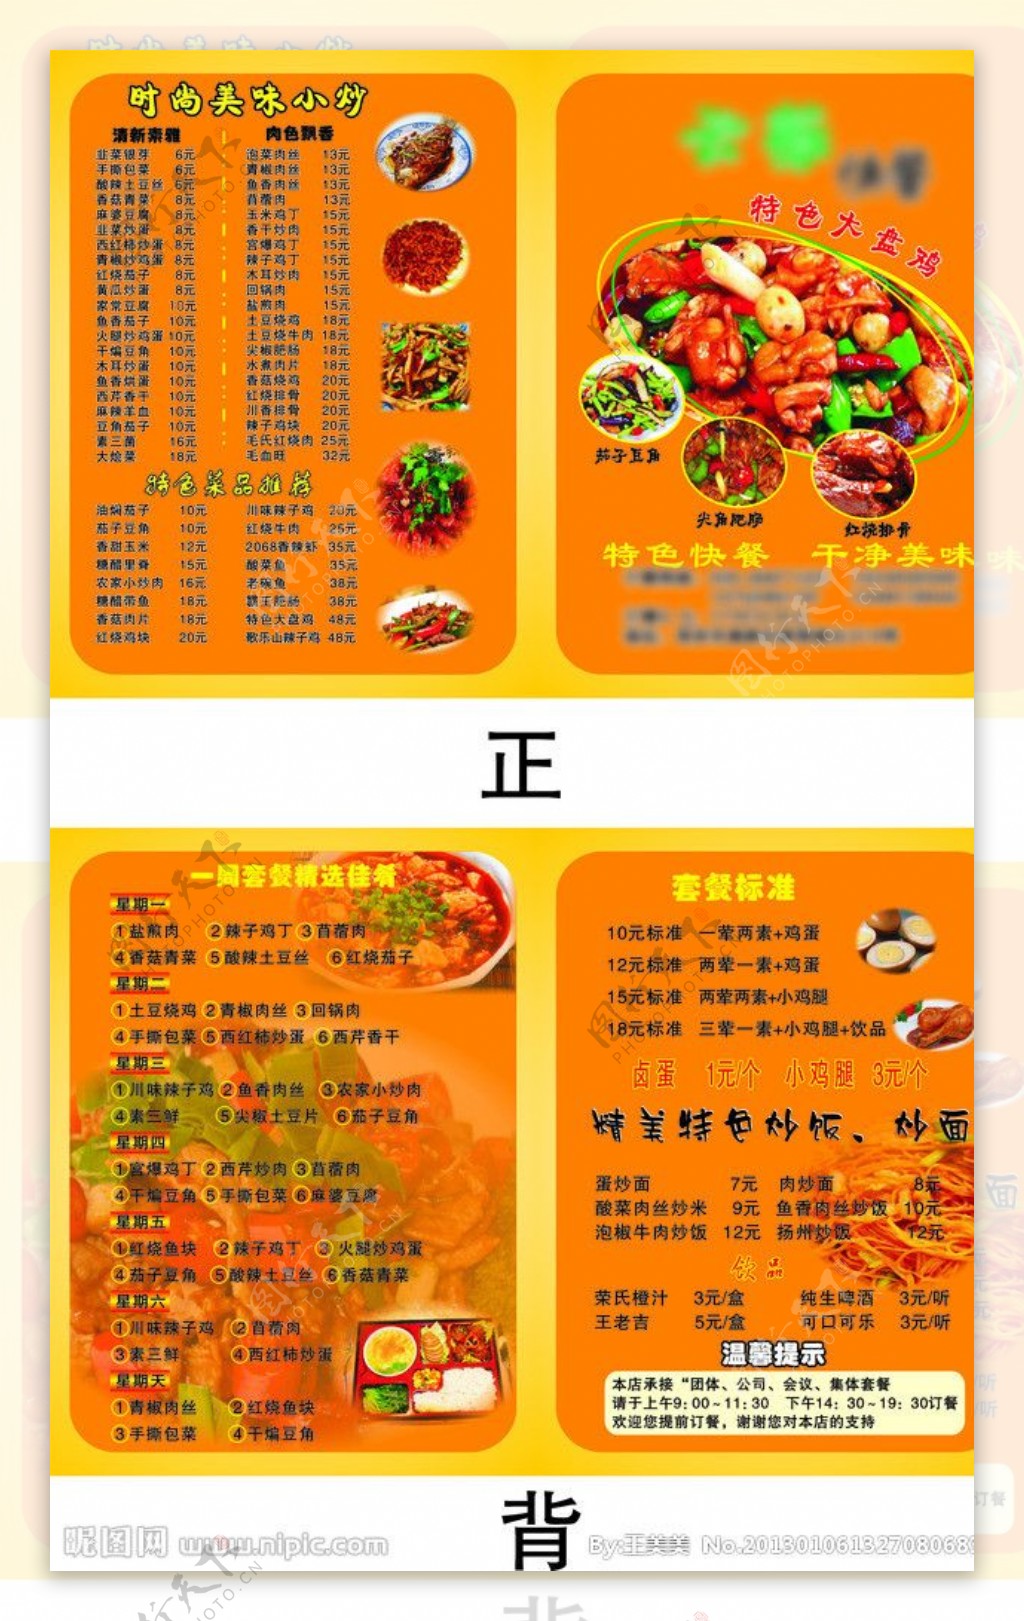 西式快餐店汉堡饮料菜单菜谱画册模板模板下载_1275x1875像素_【包图网】